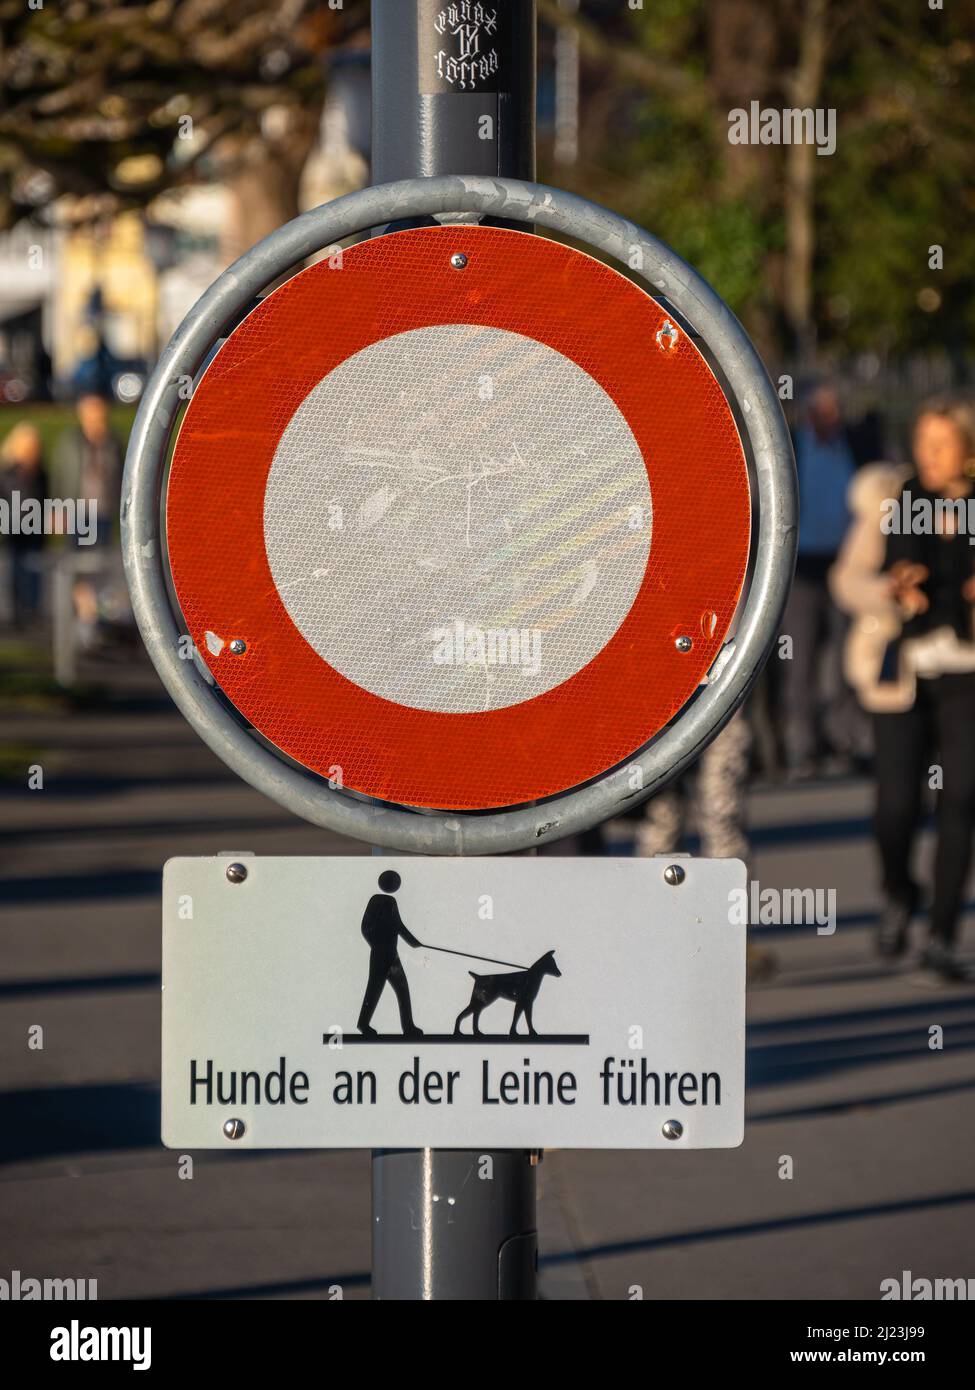 Zug, Svizzera - 31 dicembre 2021: Focus sul segno dove i cani non sono ammessi per essere liberi, il testo sul segno sta dicendo che i cani dovrebbero essere sul Foto Stock